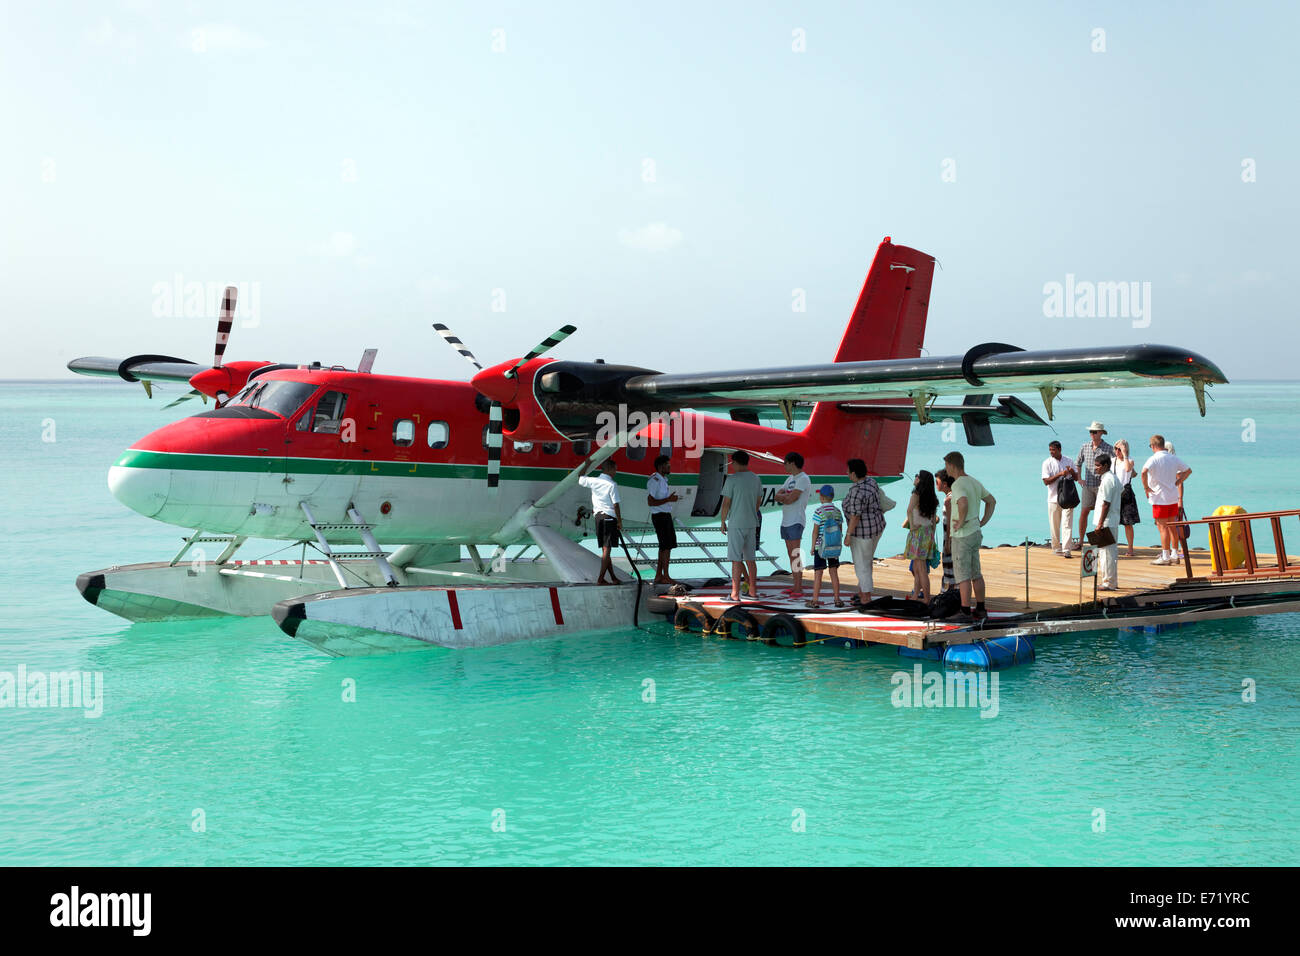 Les passagers d'un De Havilland Canada DHC-6 Twin Otter de l'aquaplanage, ponton flottant, Maldives Banque D'Images